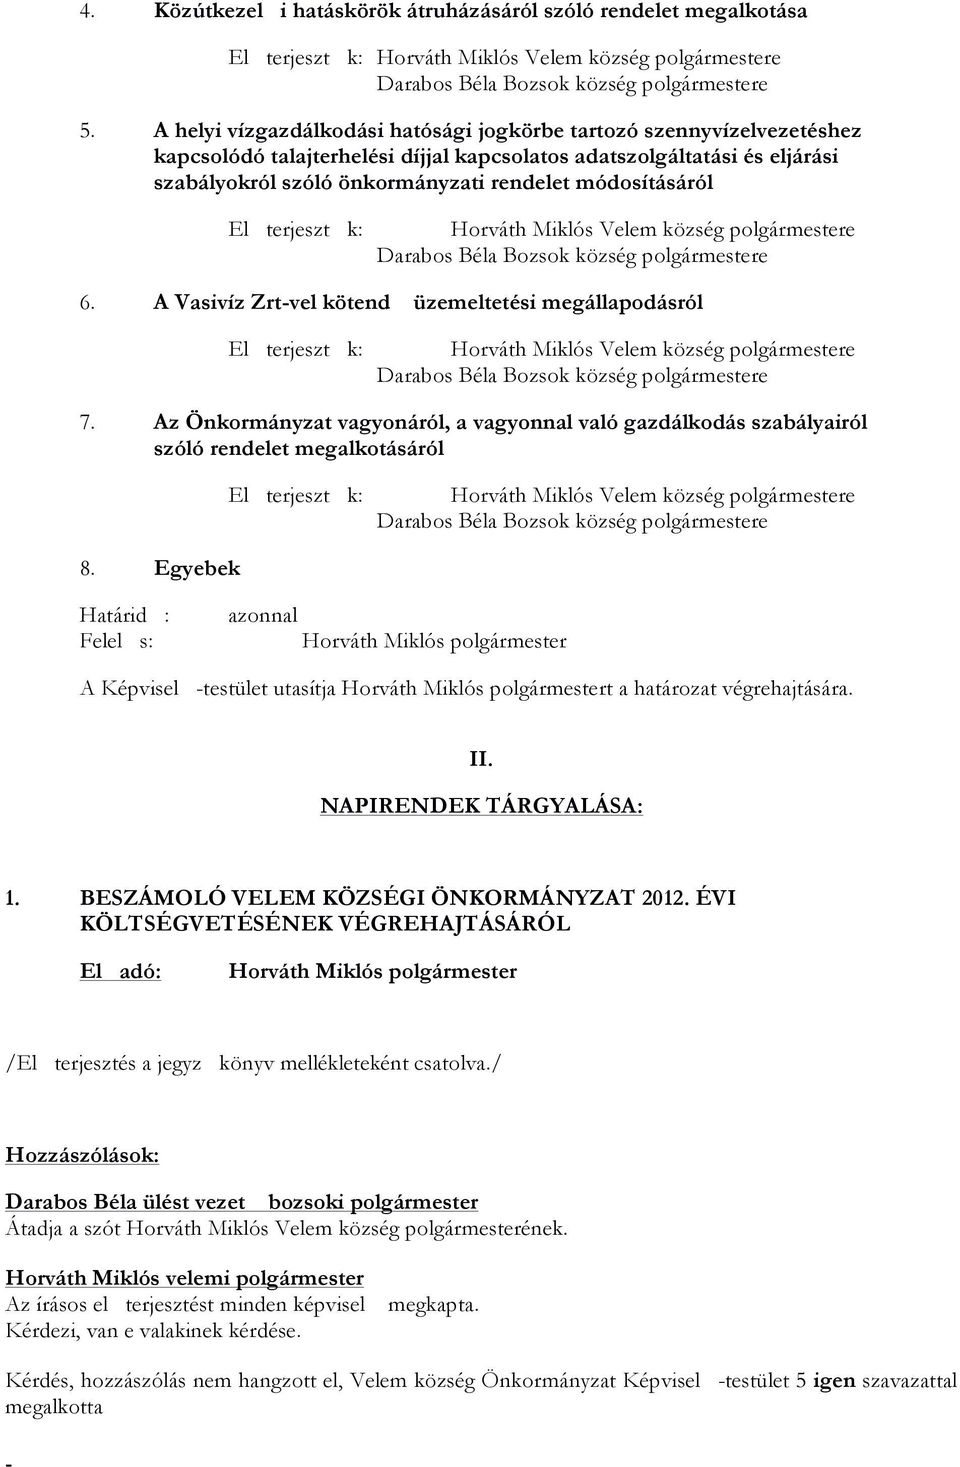 módosításáról 6. A Vasivíz Zrtvel kötend üzemeltetési megállapodásról 7. Az Önkormányzat vagyonáról, a vagyonnal való gazdálkodás szabályairól szóló rendelet megalkotásáról 8.